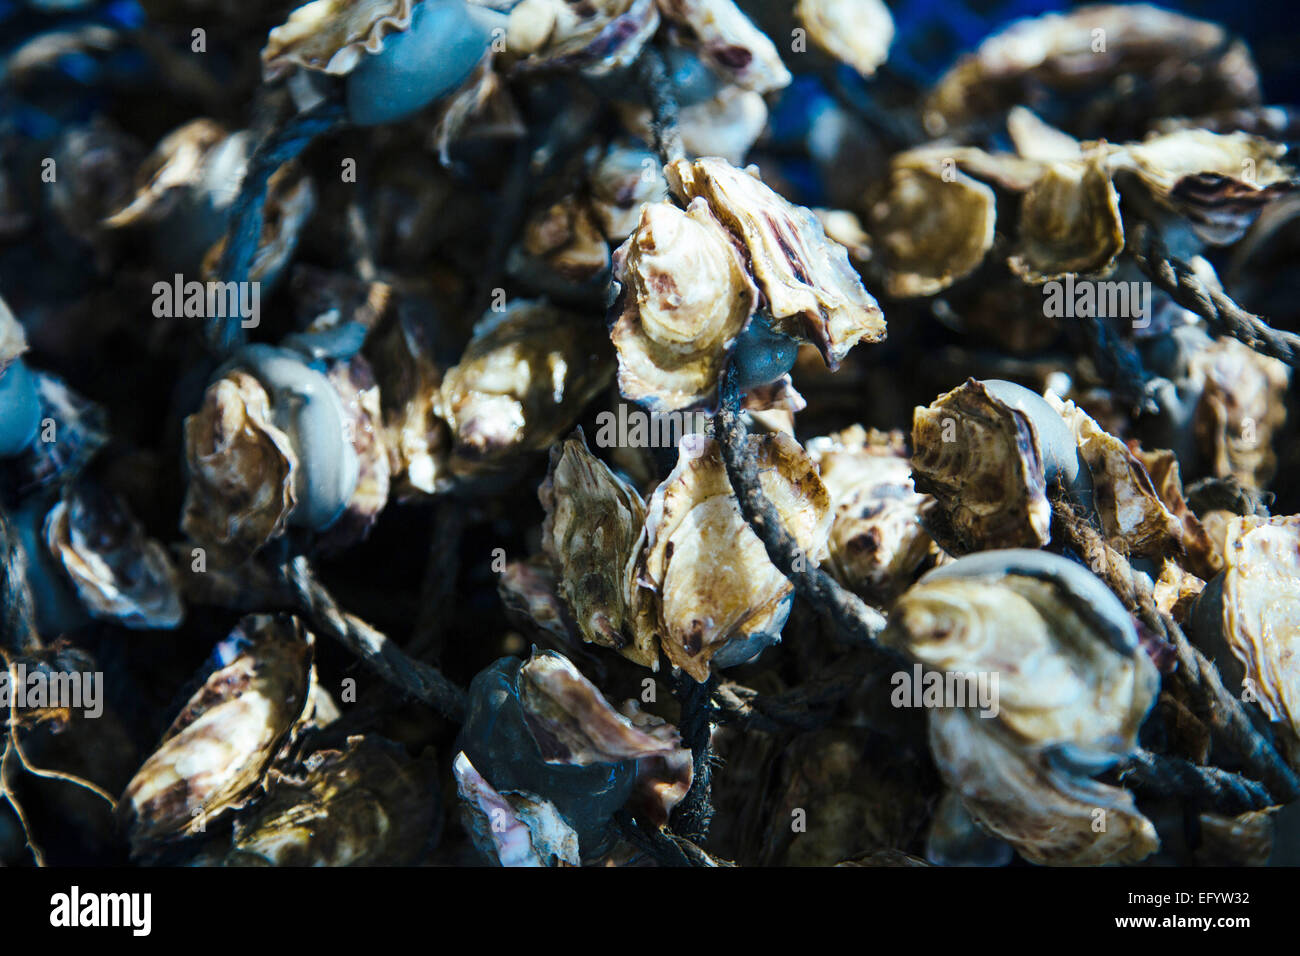 Etang de Thau, la laguna de Thau (Sur de Francia): ostras Foto de stock